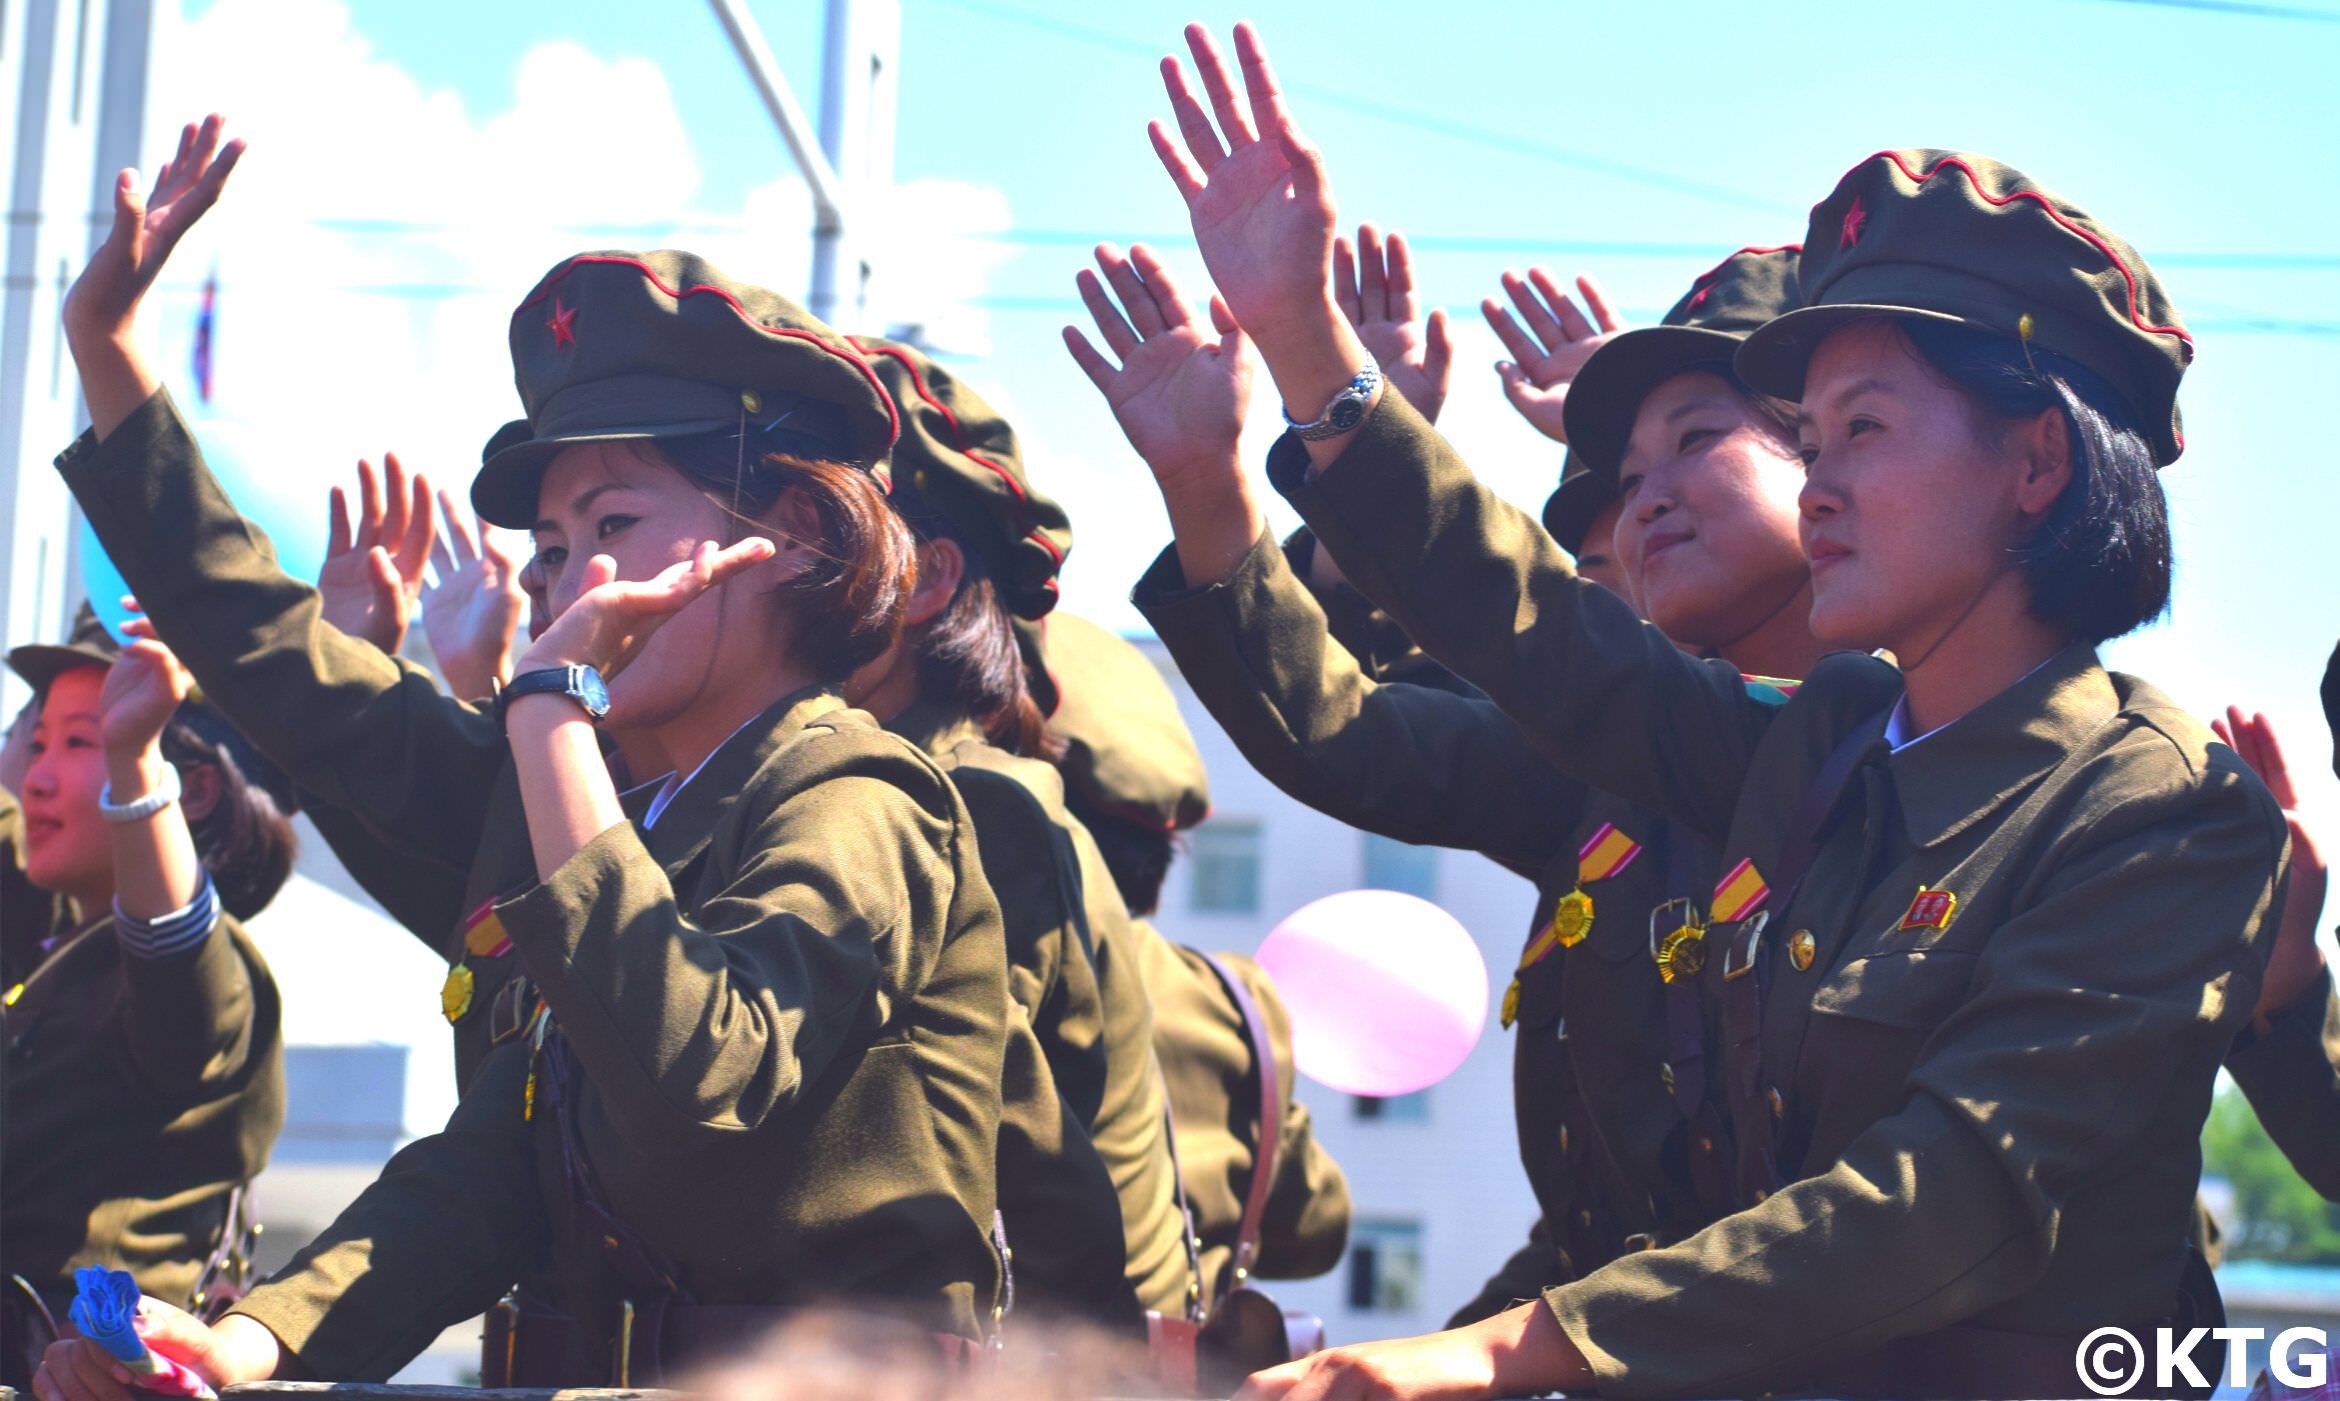 Des femmes soldats nord-coréennes lors d'un défilé militaire à Pyongyang, capitale de la RPDC. Voyage en Corée du Nord organisé par KTG Tours